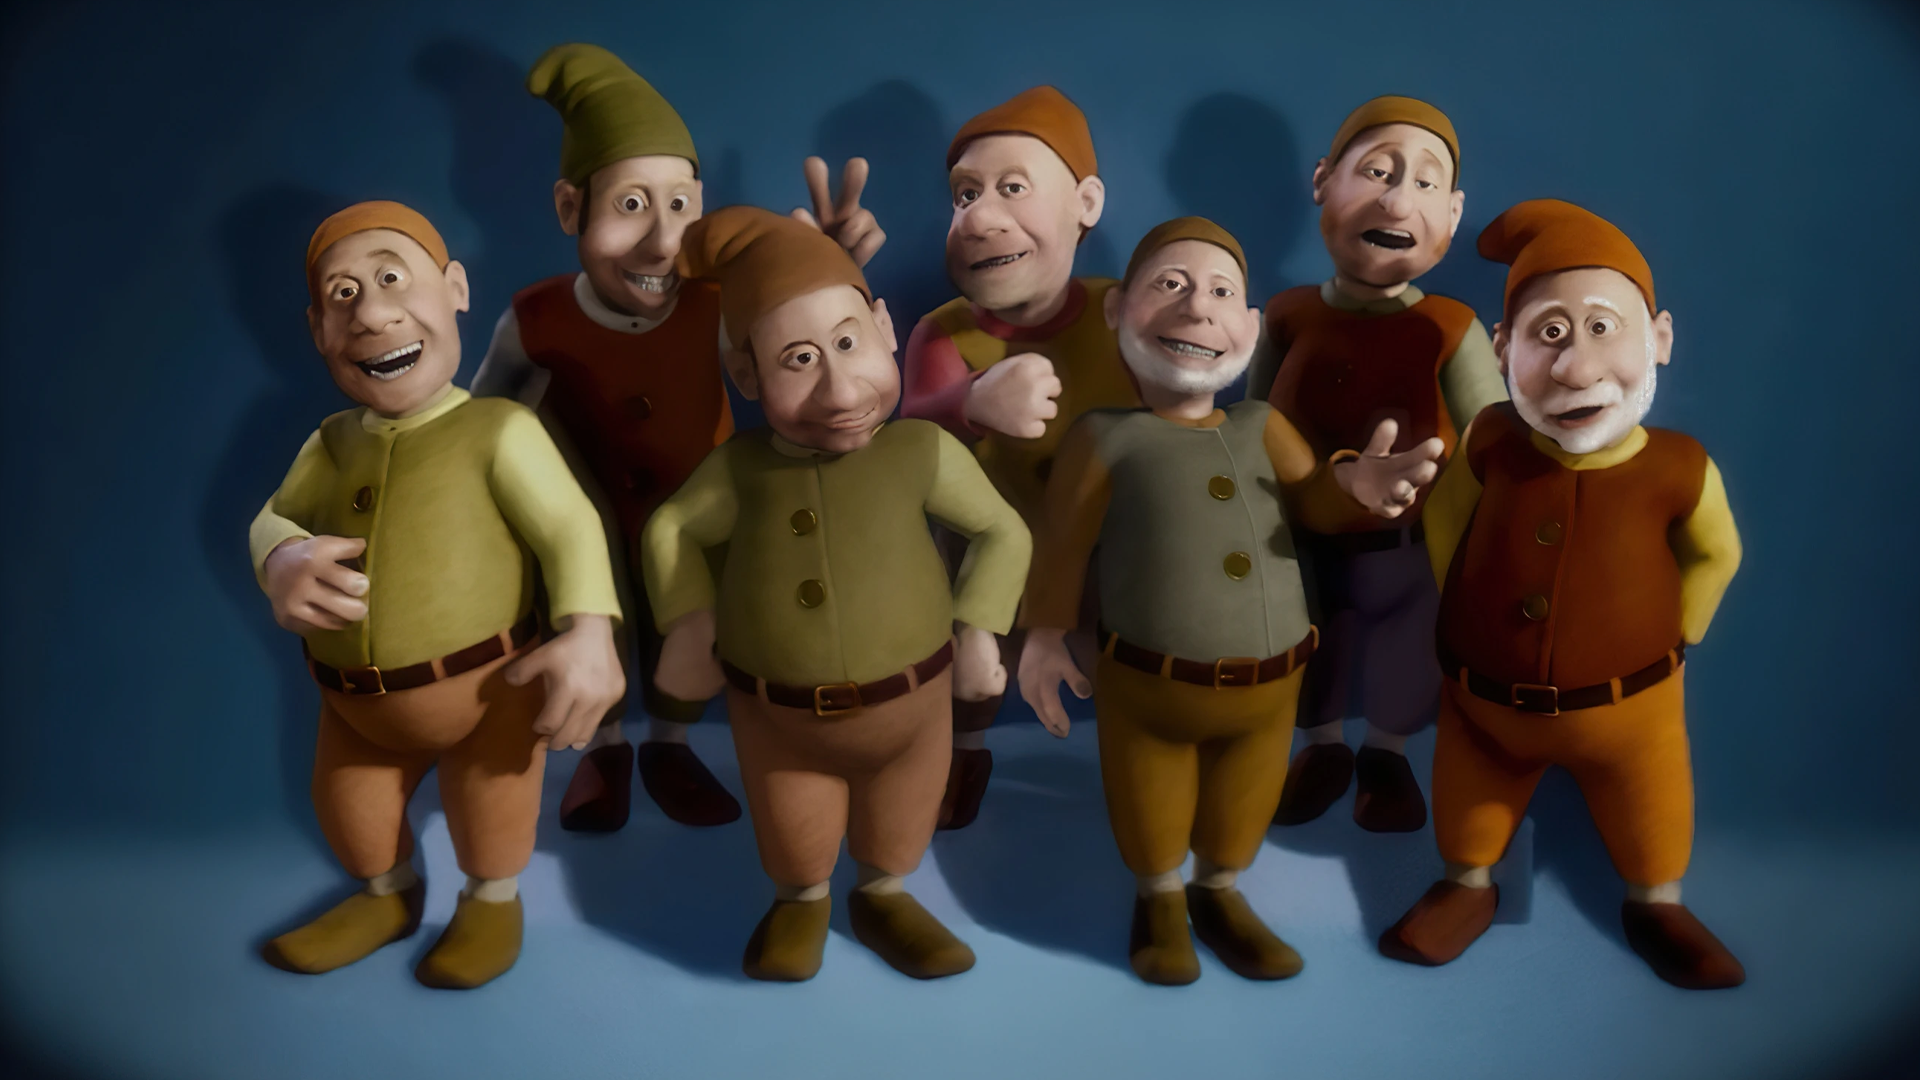 7 Dwarves